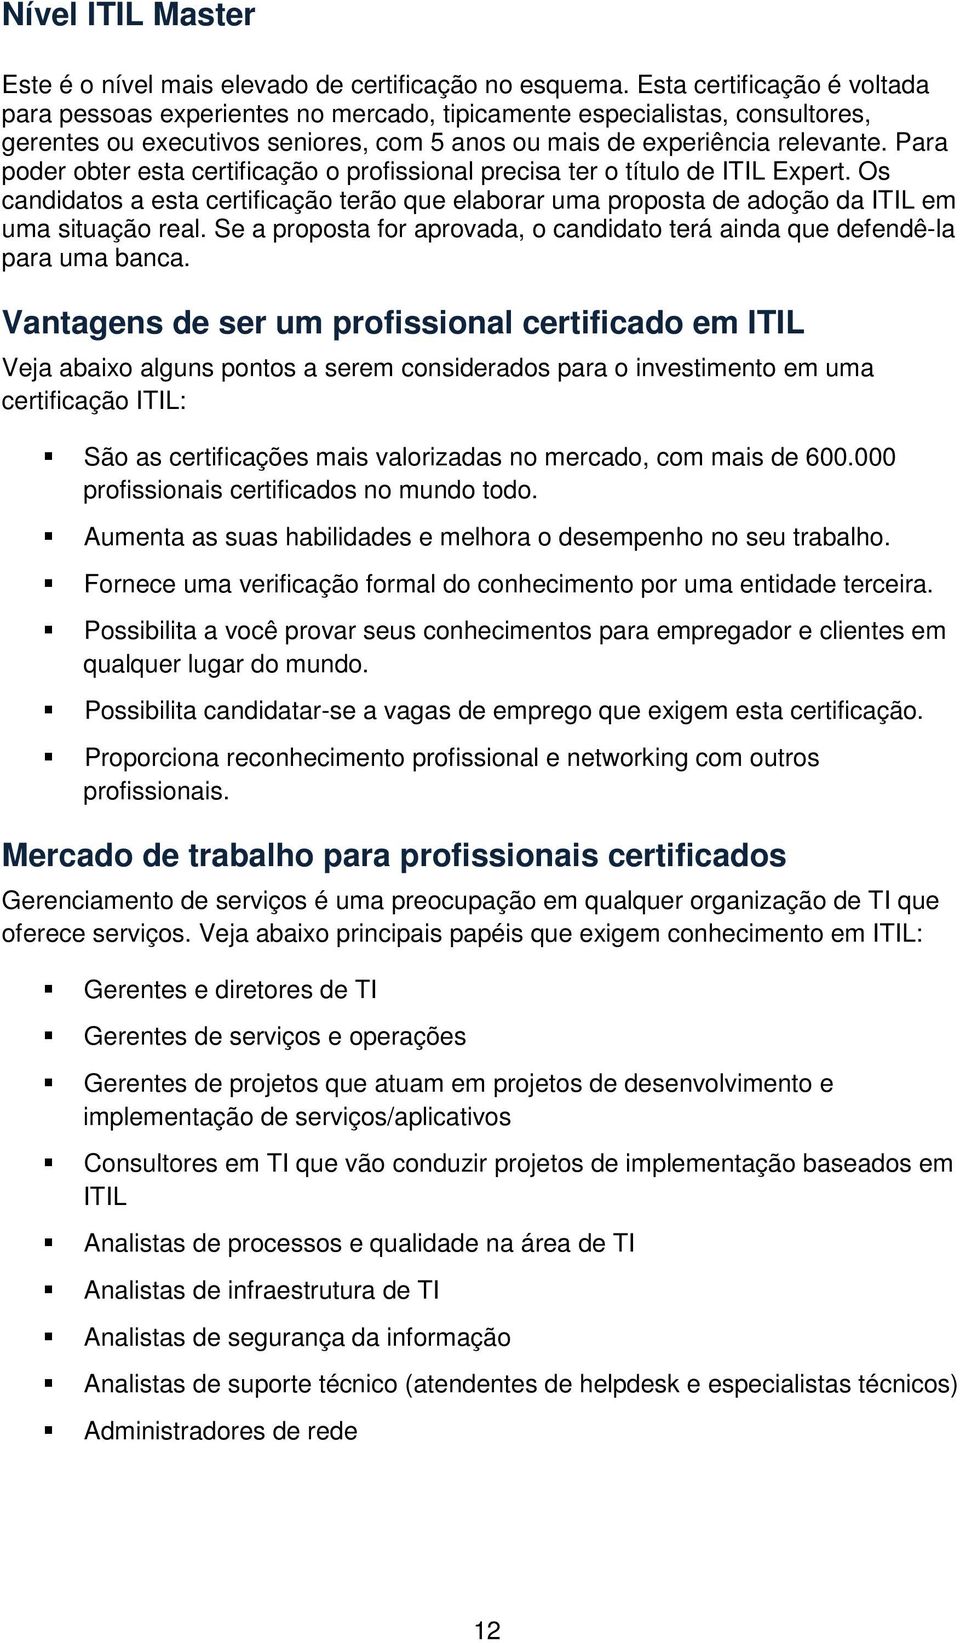 Para poder obter esta certificação o profissional precisa ter o título de ITIL Expert. Os candidatos a esta certificação terão que elaborar uma proposta de adoção da ITIL em uma situação real.